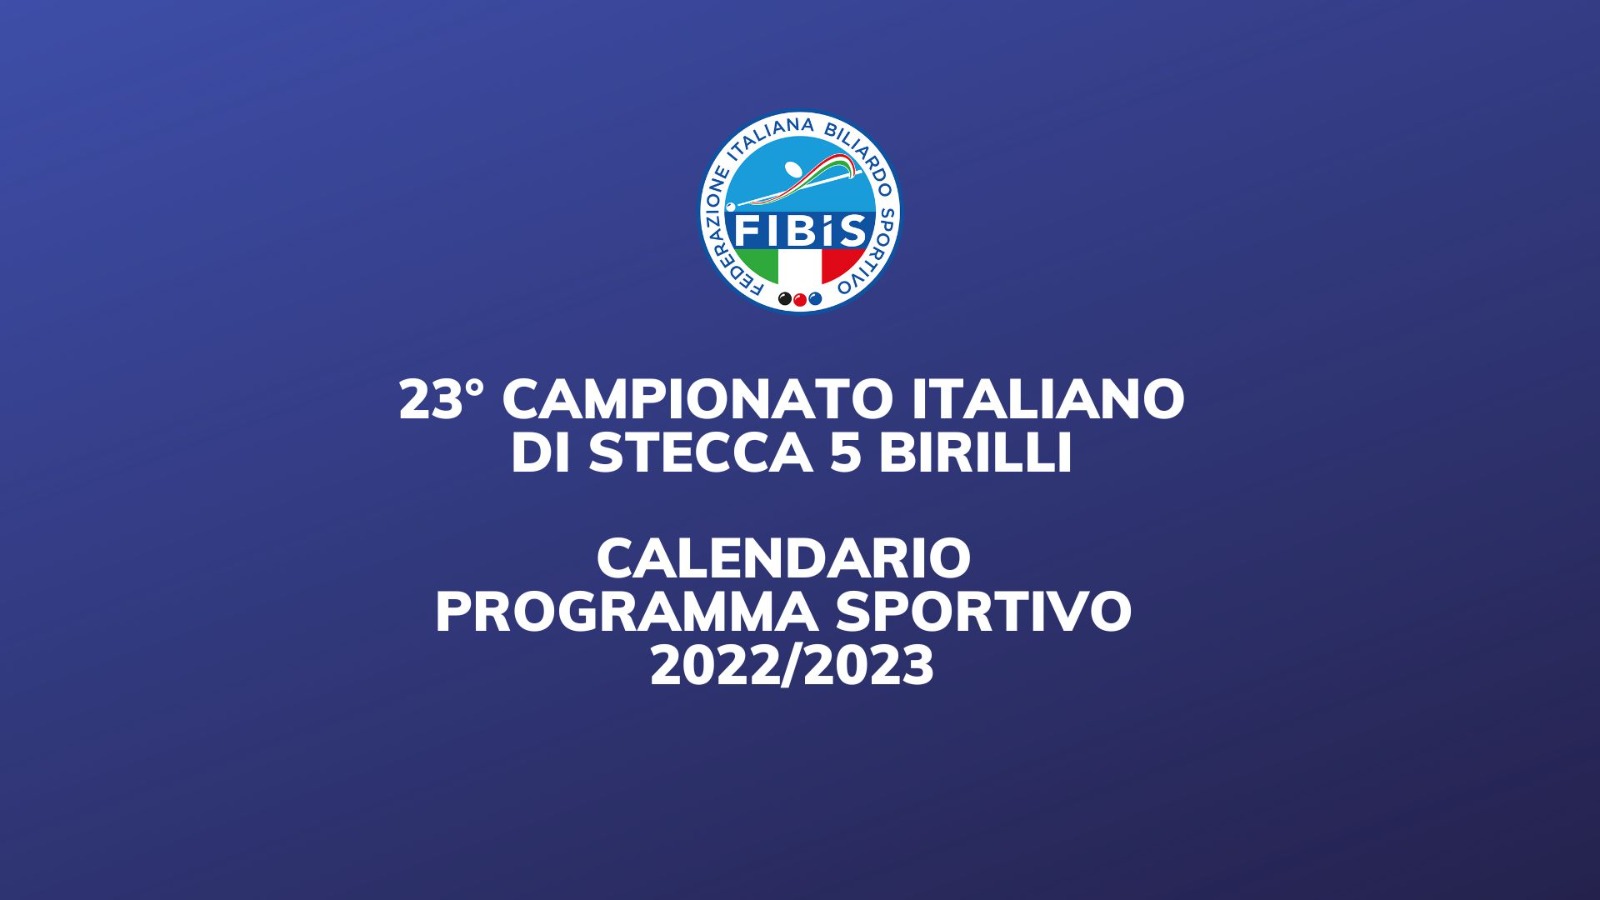 ATTIVITÀ SPORTIVA: CALENDARIO E PROGRAMMA SPORTIVO 2022/2023